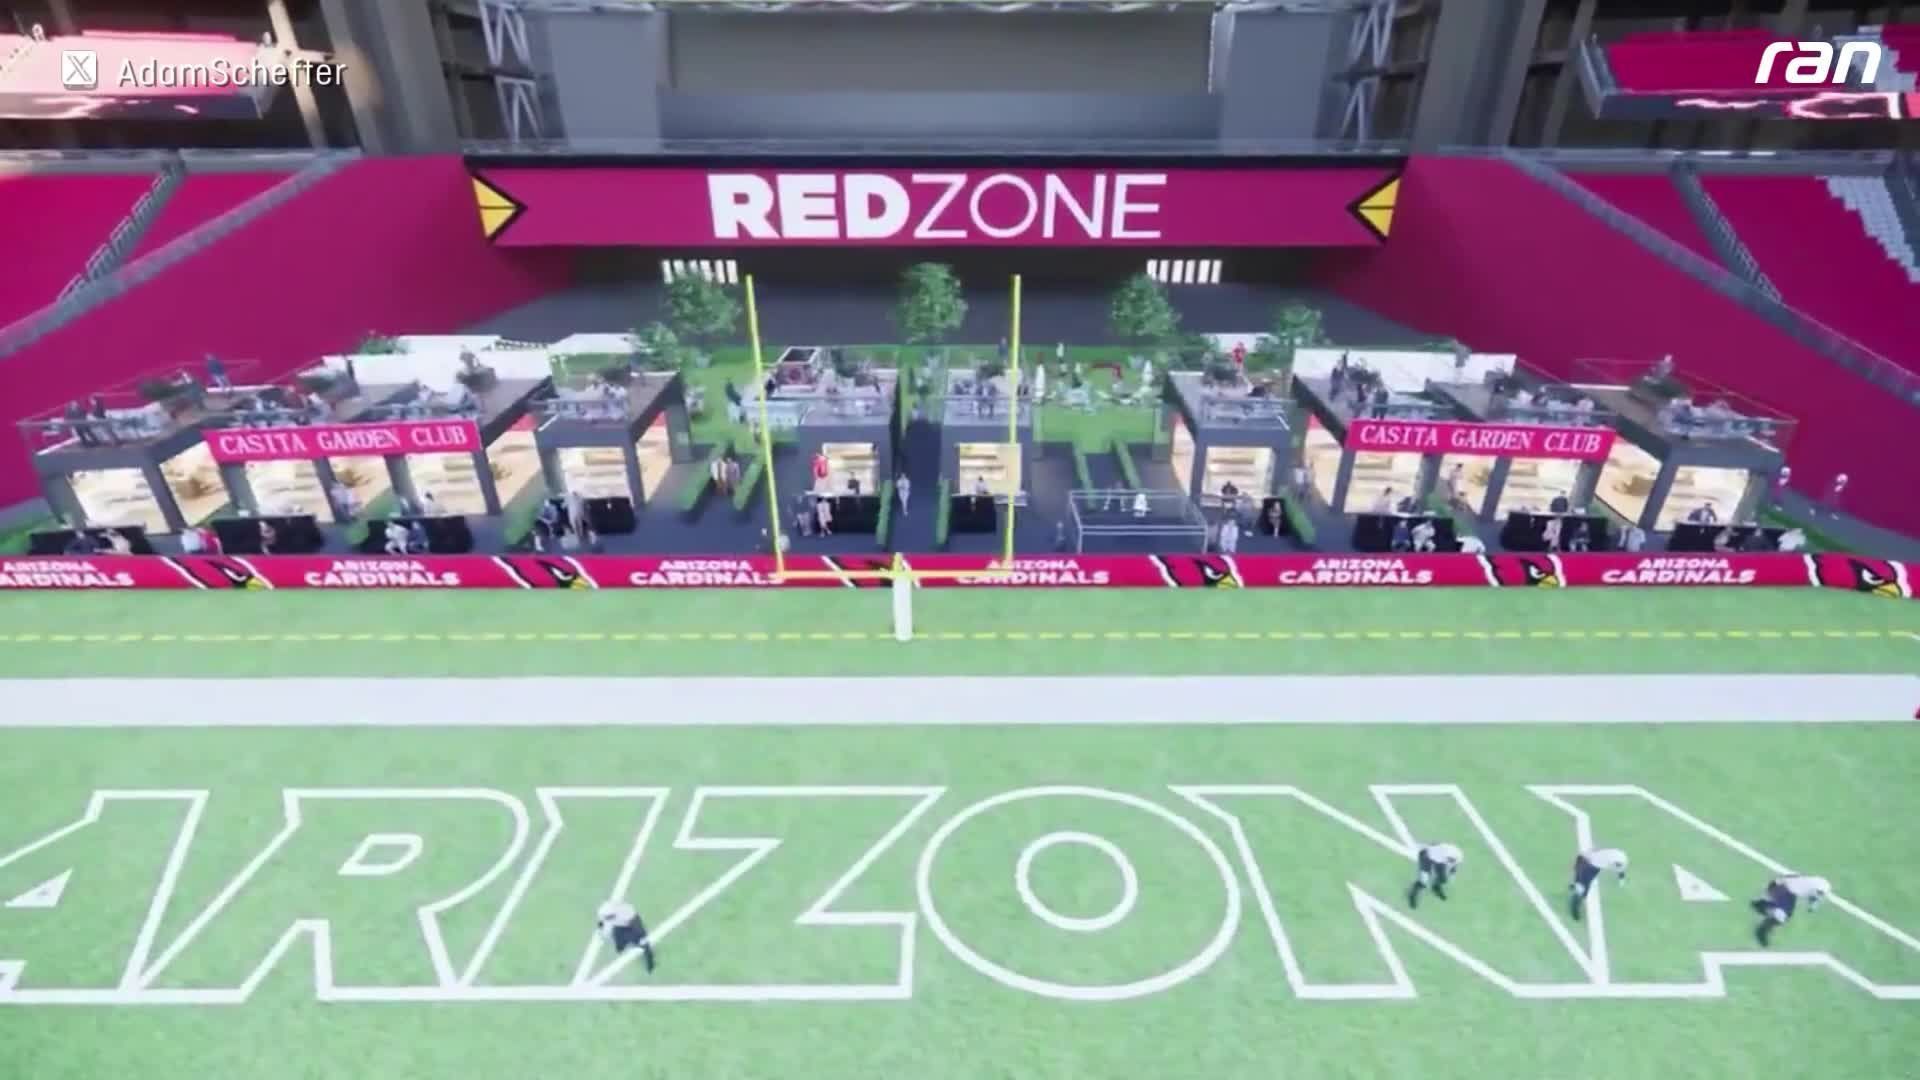 NFL-Stadion bietet Häuschen an der Endzone an!